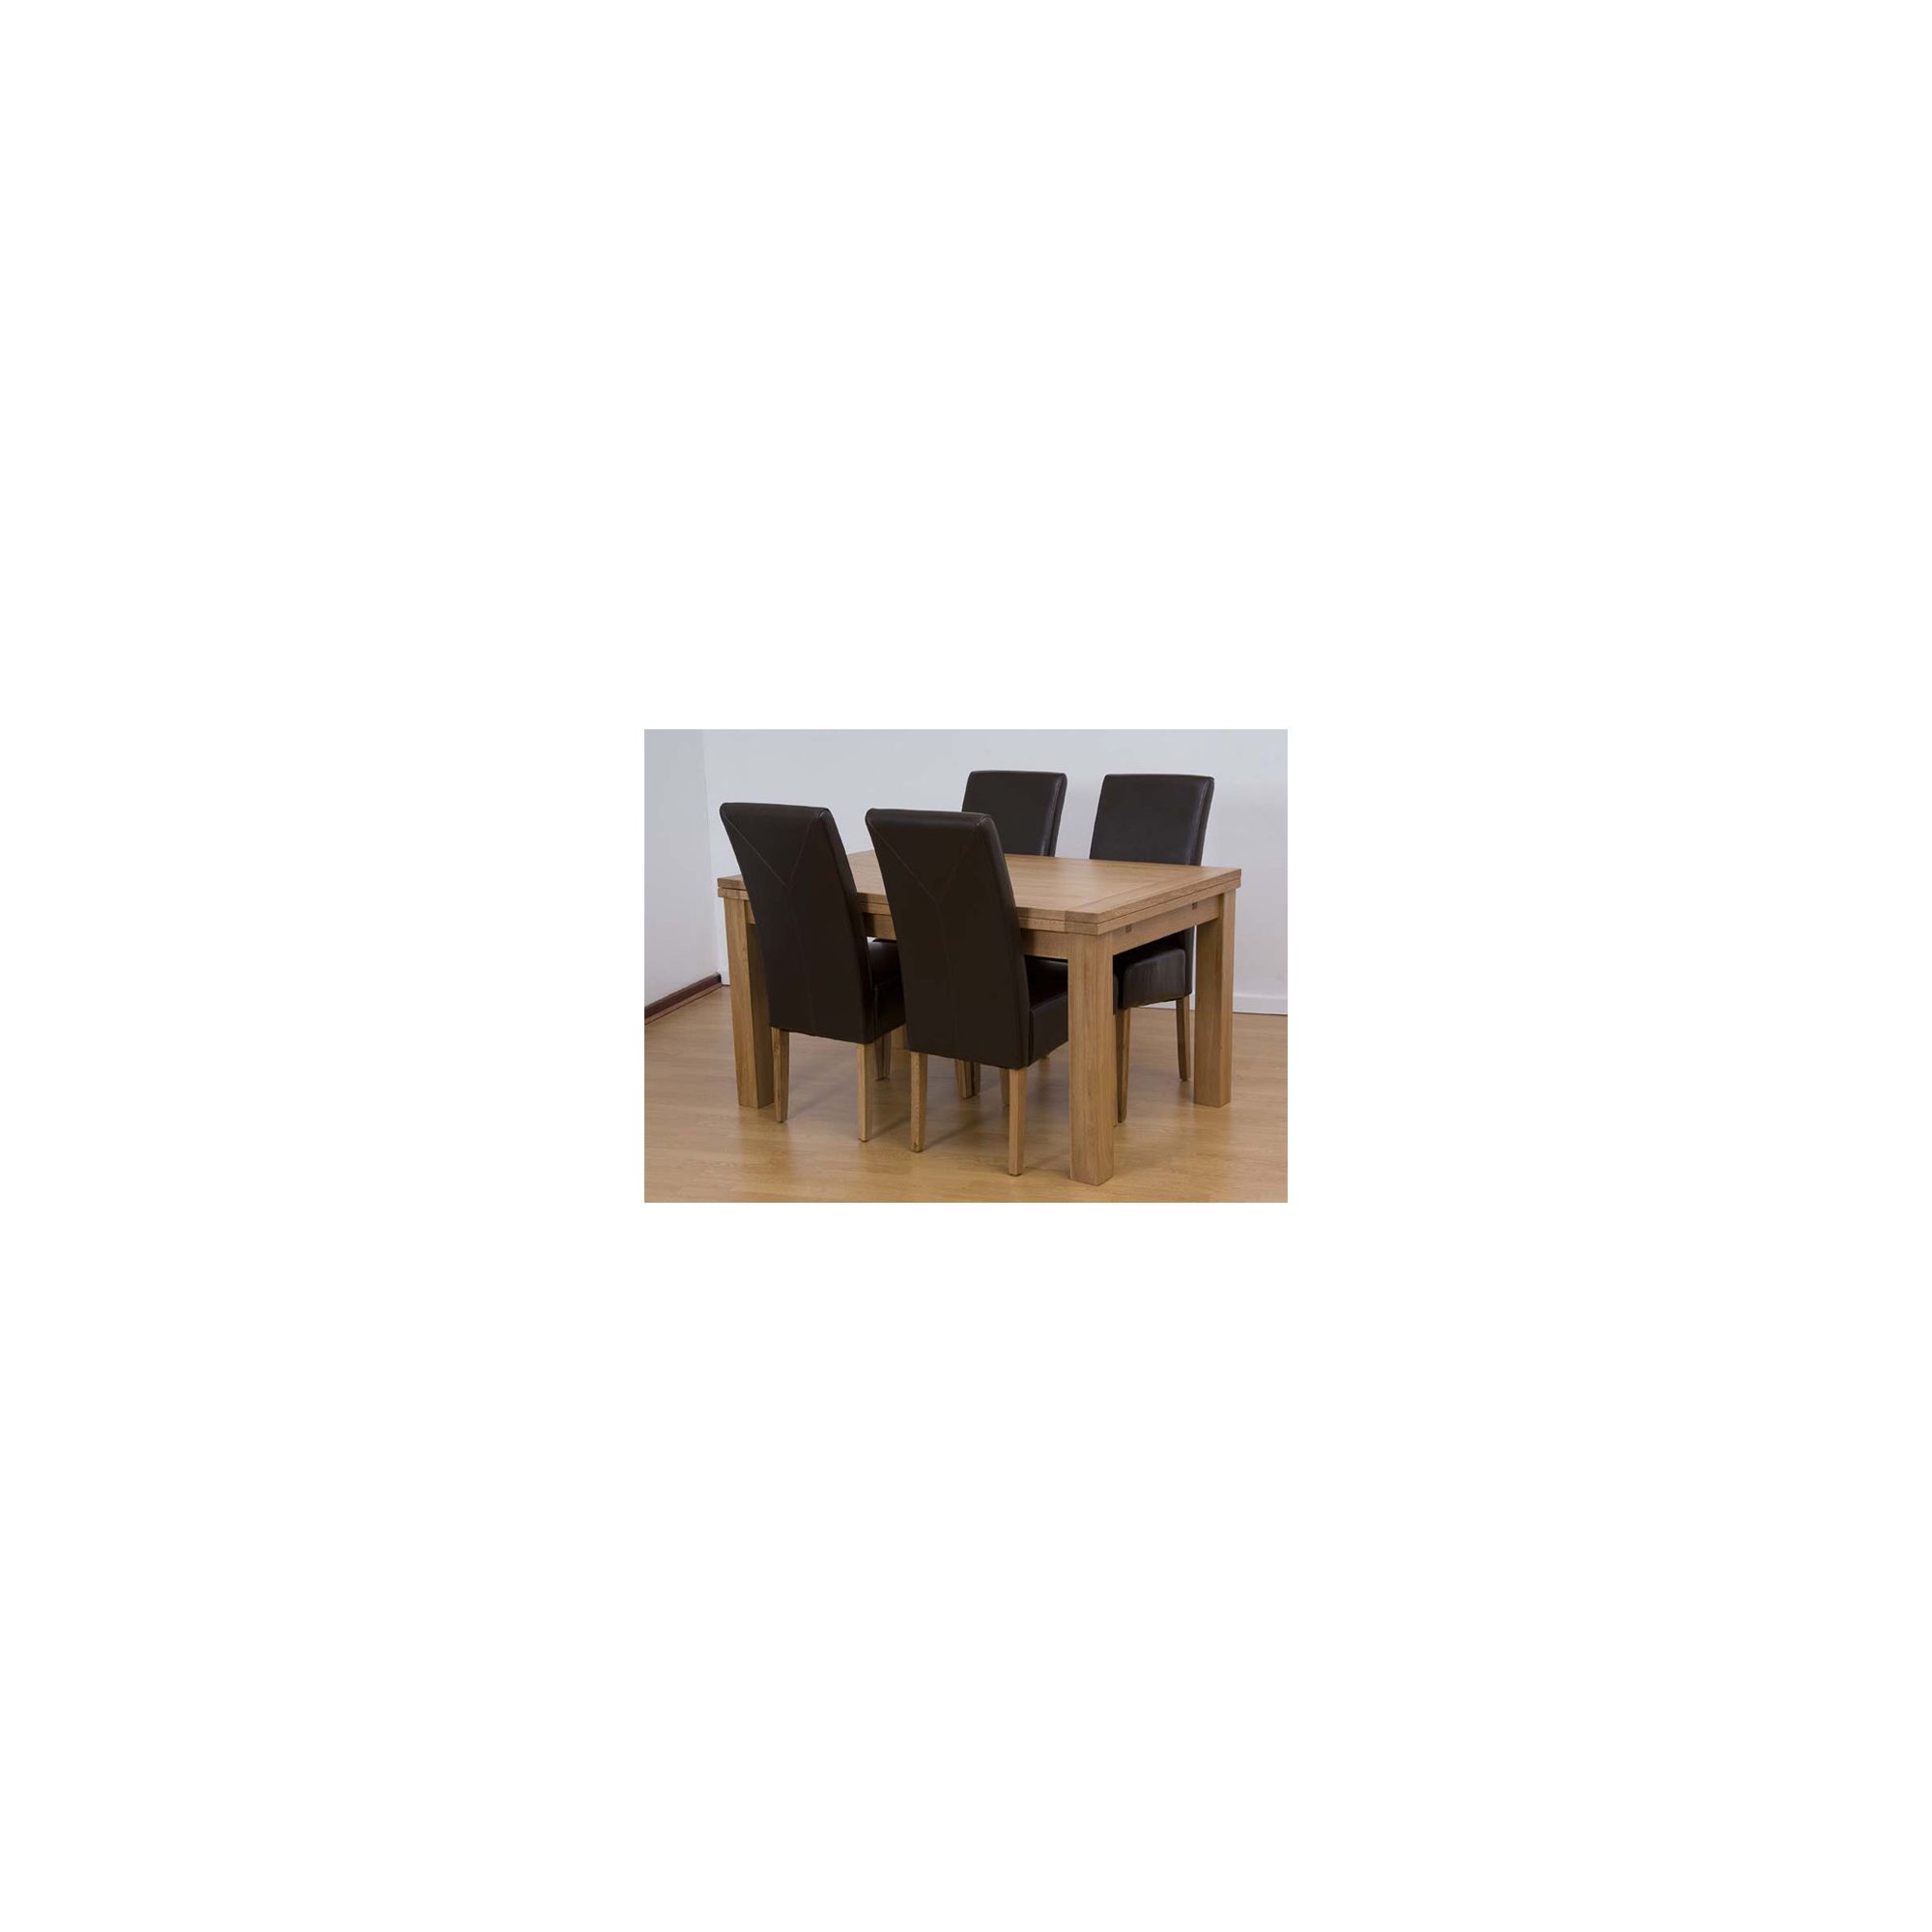 G&P Furniture 5 Piece Rectangular Extending Oak Dining Set - 76.2cm H x 140cm - 230cm W x 90cm D at Tesco Direct